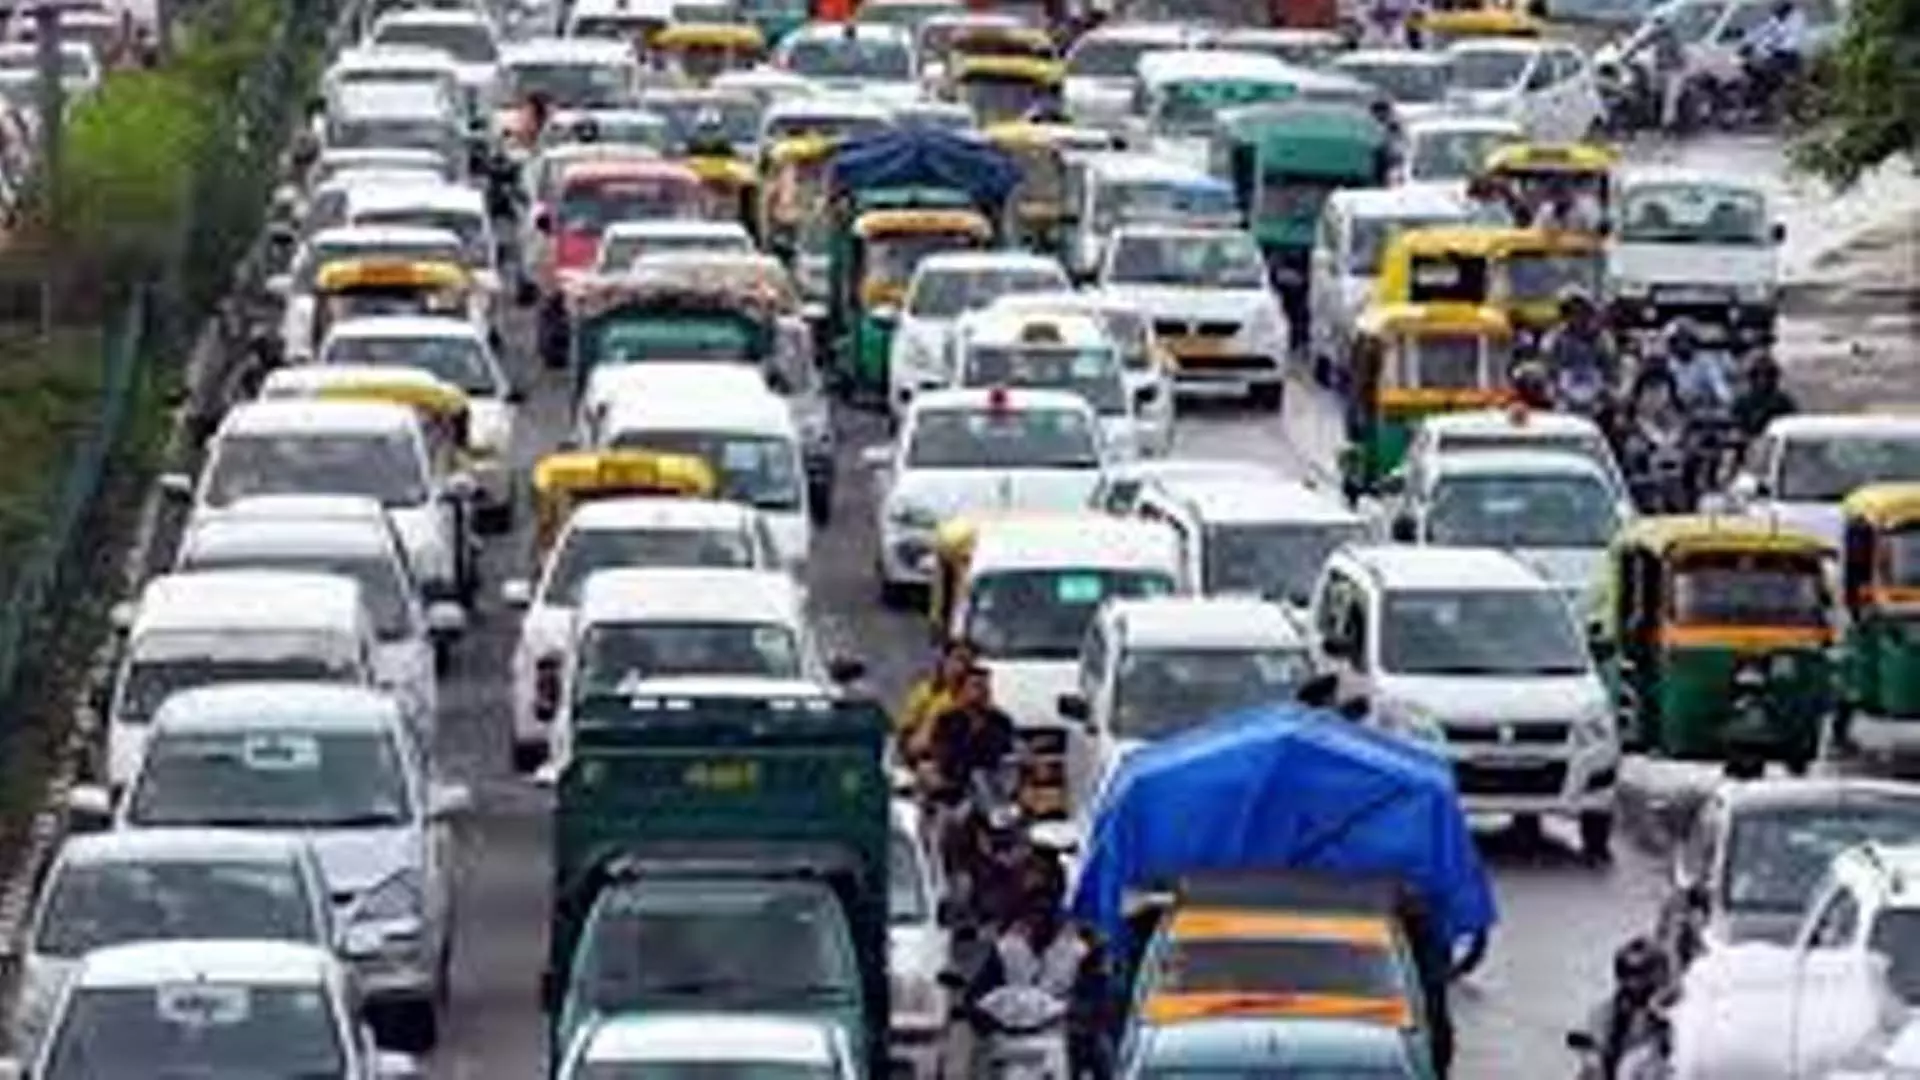 Chennai News: सीमरेल ने स्ट्राहांस् रोड के पास यातायात डायवर्जन की घोषणा की